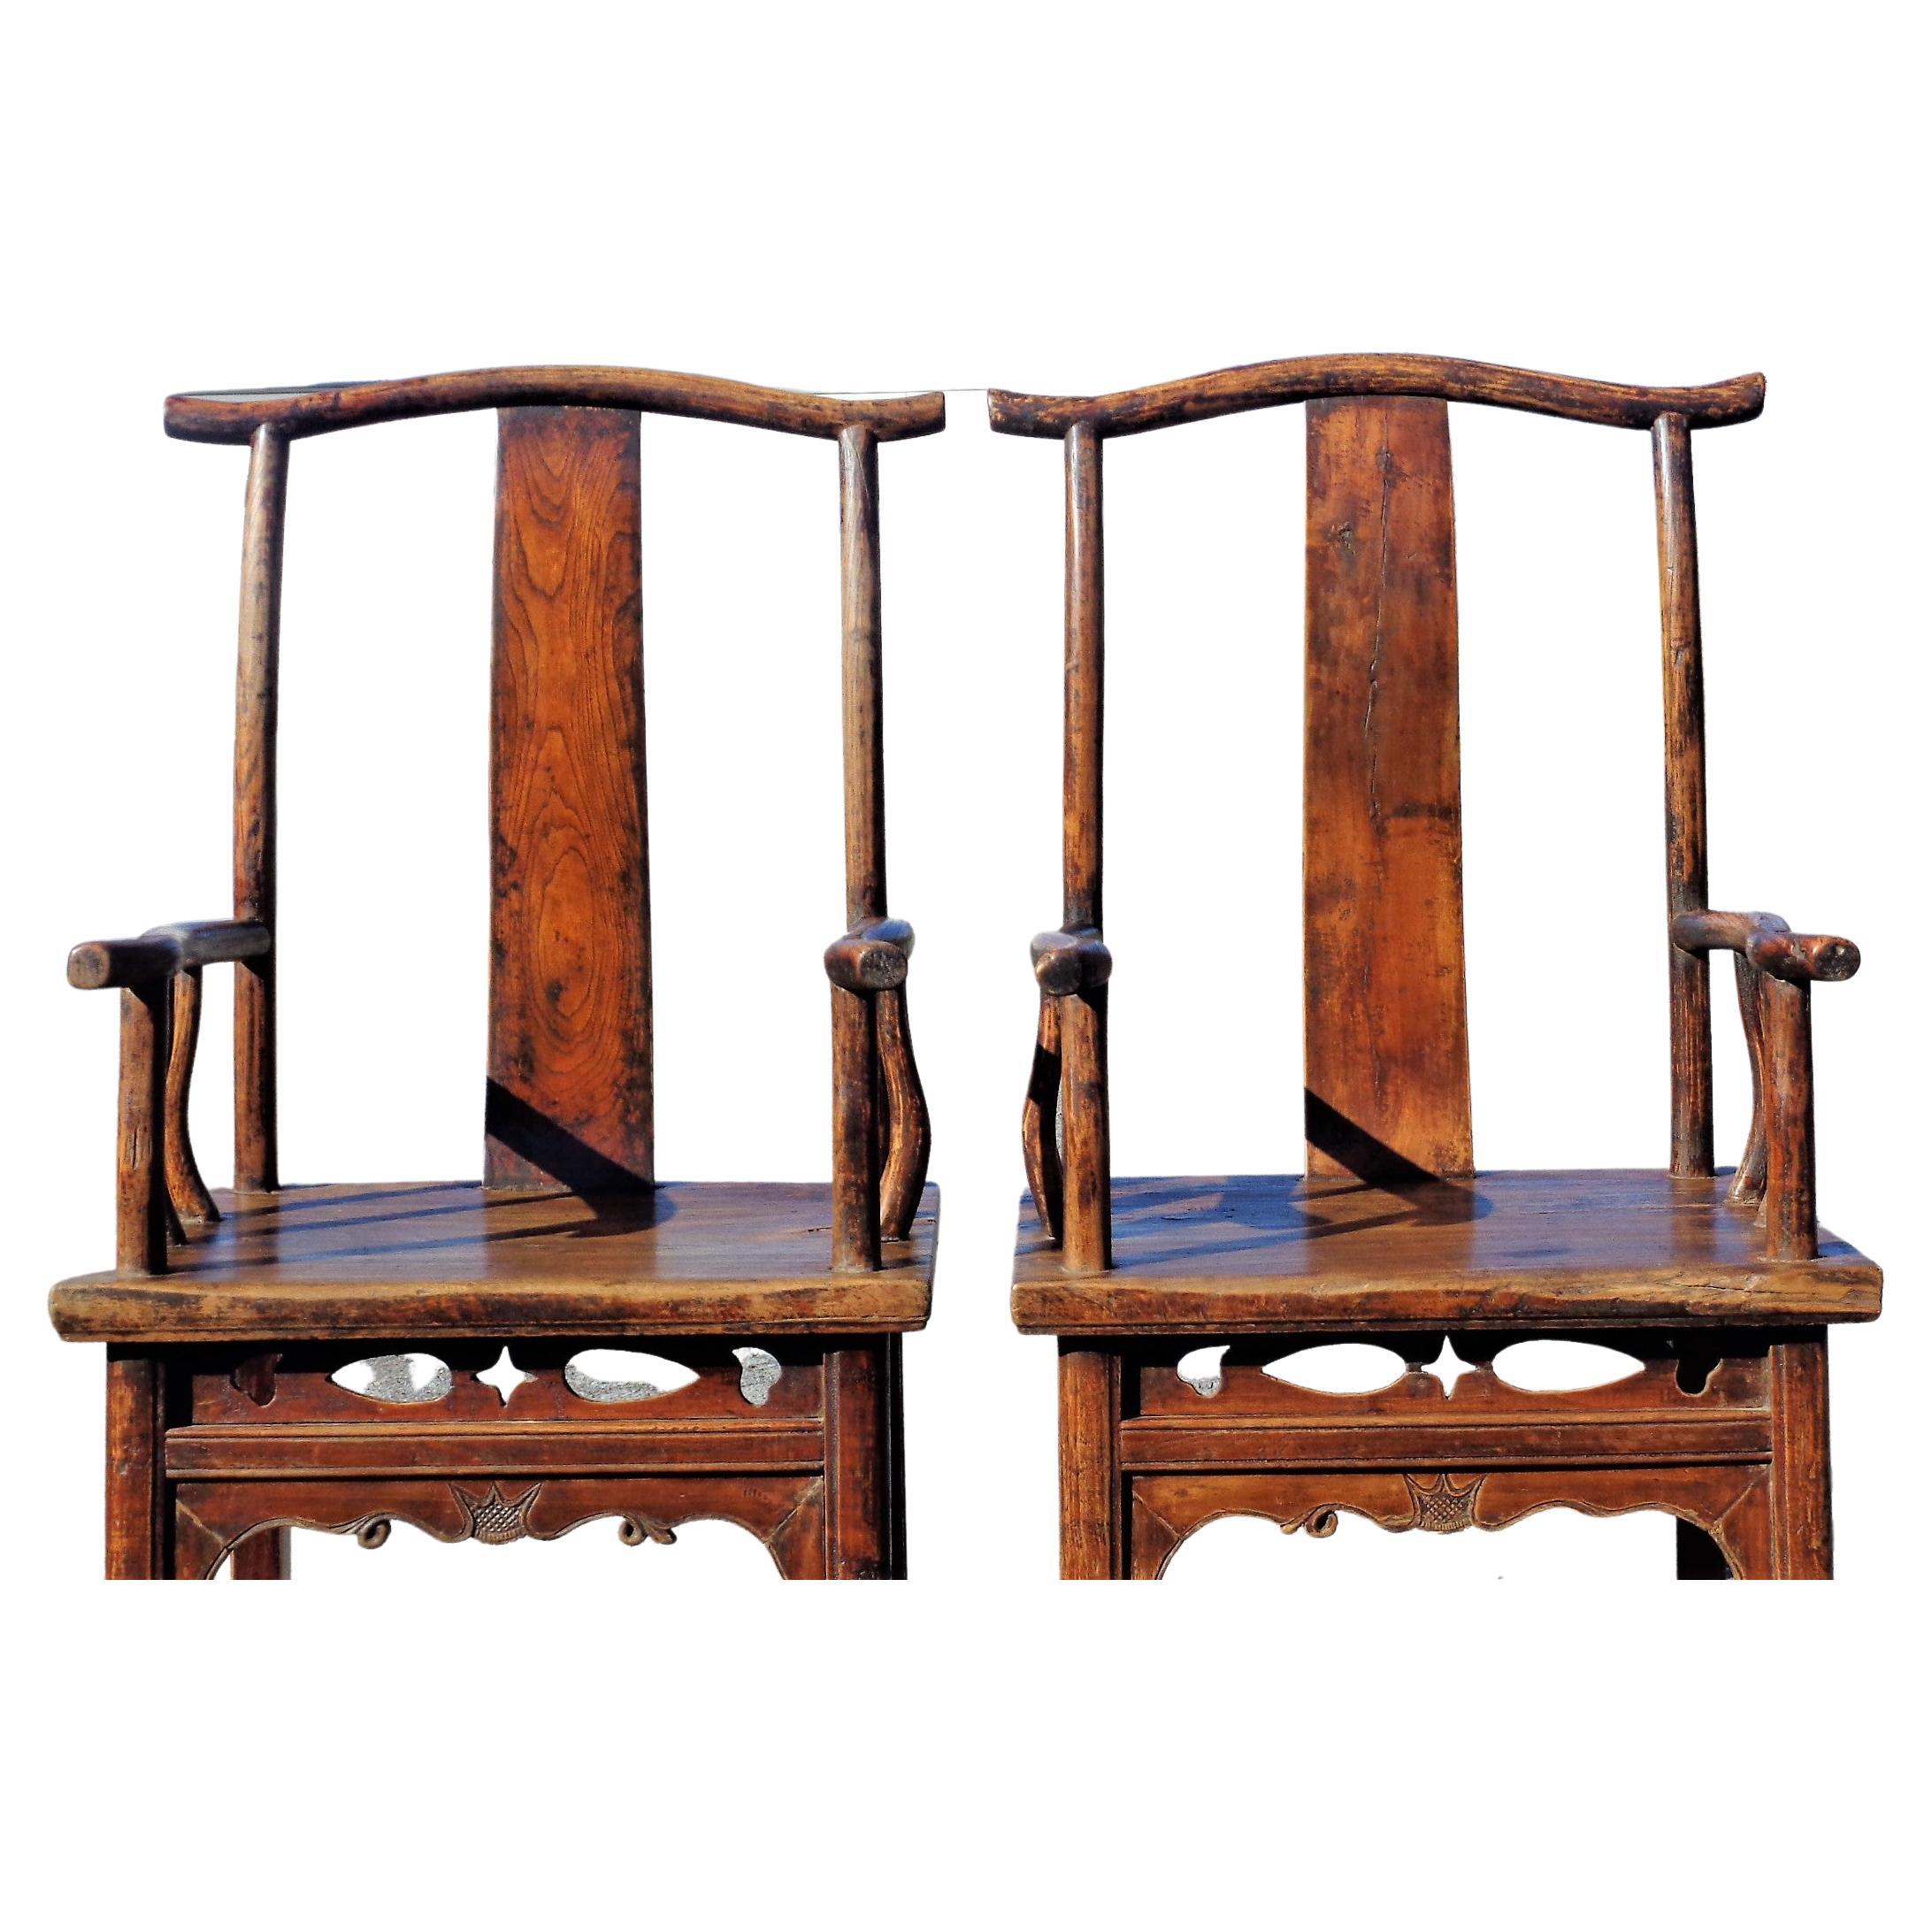 Paire de fauteuils à dossier en orme, en bois dur, de la dynastie chinoise Qing, avec patine d'origine et grain bien figuré. Fin du 19e siècle. Regardez toutes les photos et lisez le rapport de condition dans la section des commentaires. 
 